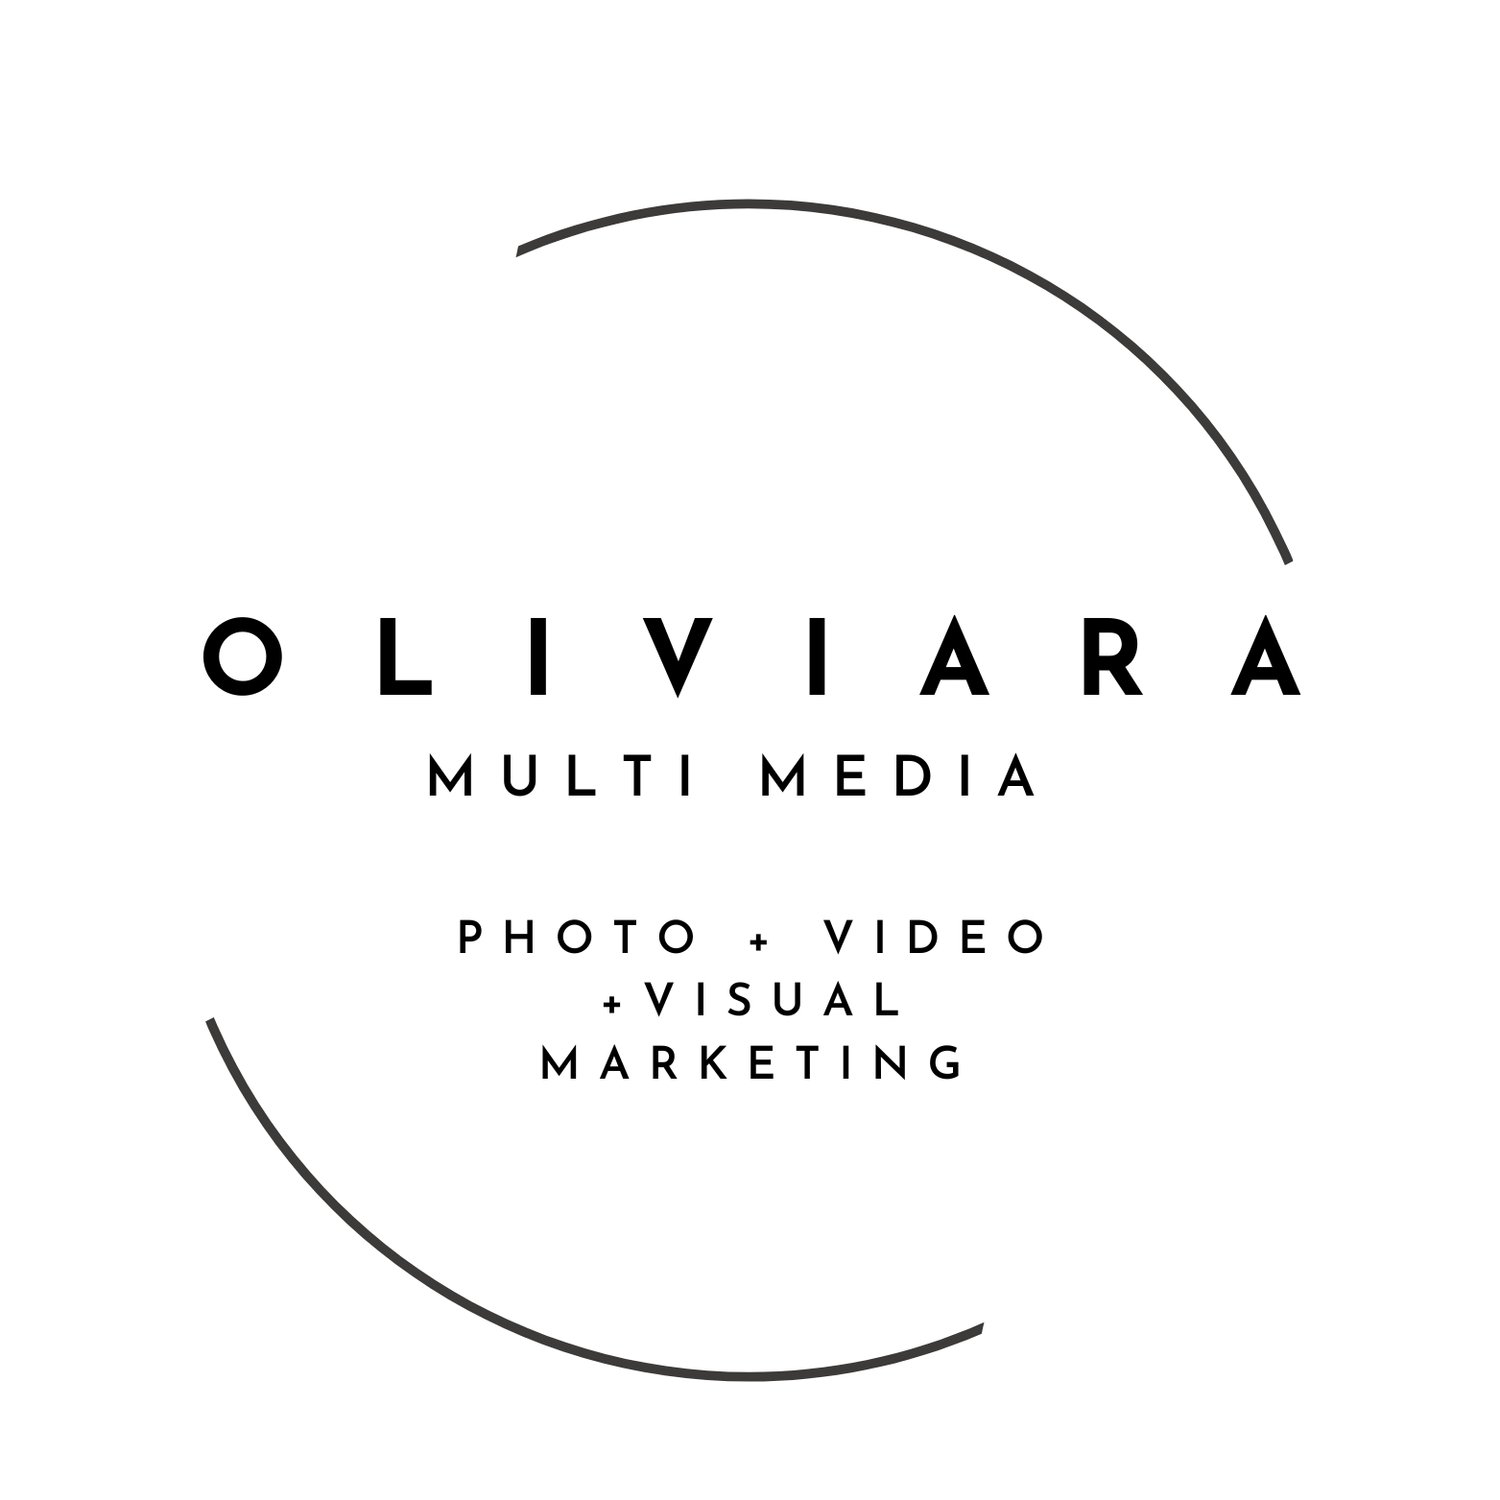 Oliviara Multi Media